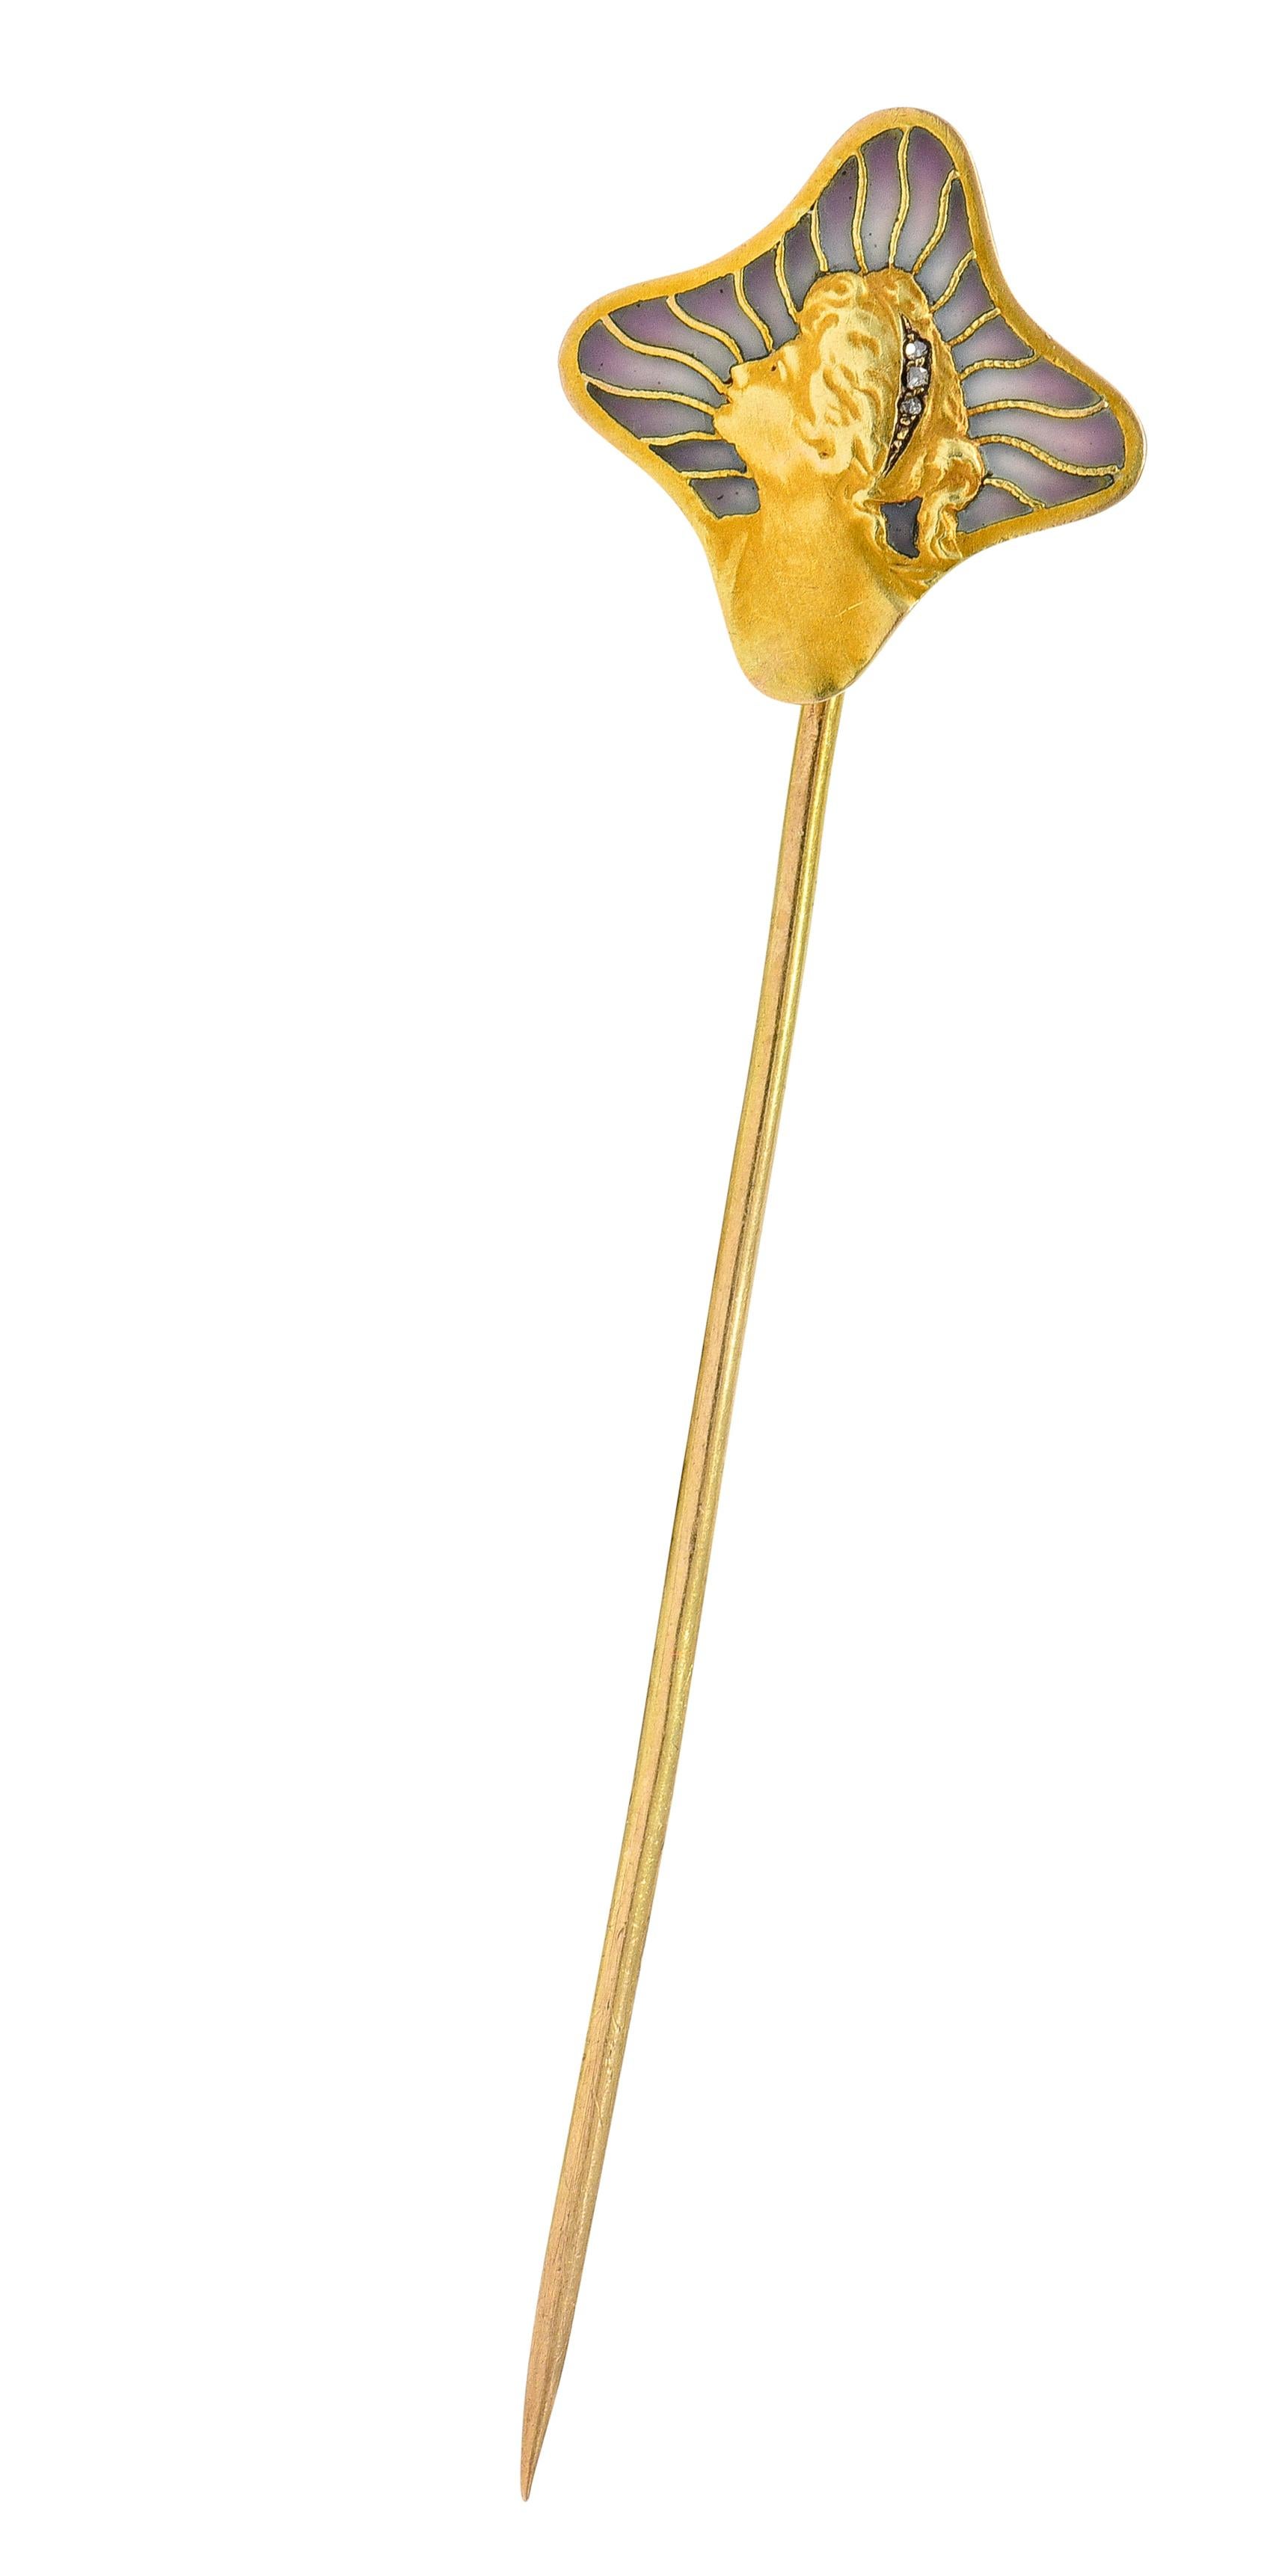 Die Anstecknadel hat einen vierblättrigen Kopf und stellt das mattgoldene Profil eines Gibson Girl dar

Mit zerzausten Locken, die von Diamanten im Rosenschliff akzentuiert werden

Mit strahlenförmigem Hintergrundmotiv, das mit durchscheinendem